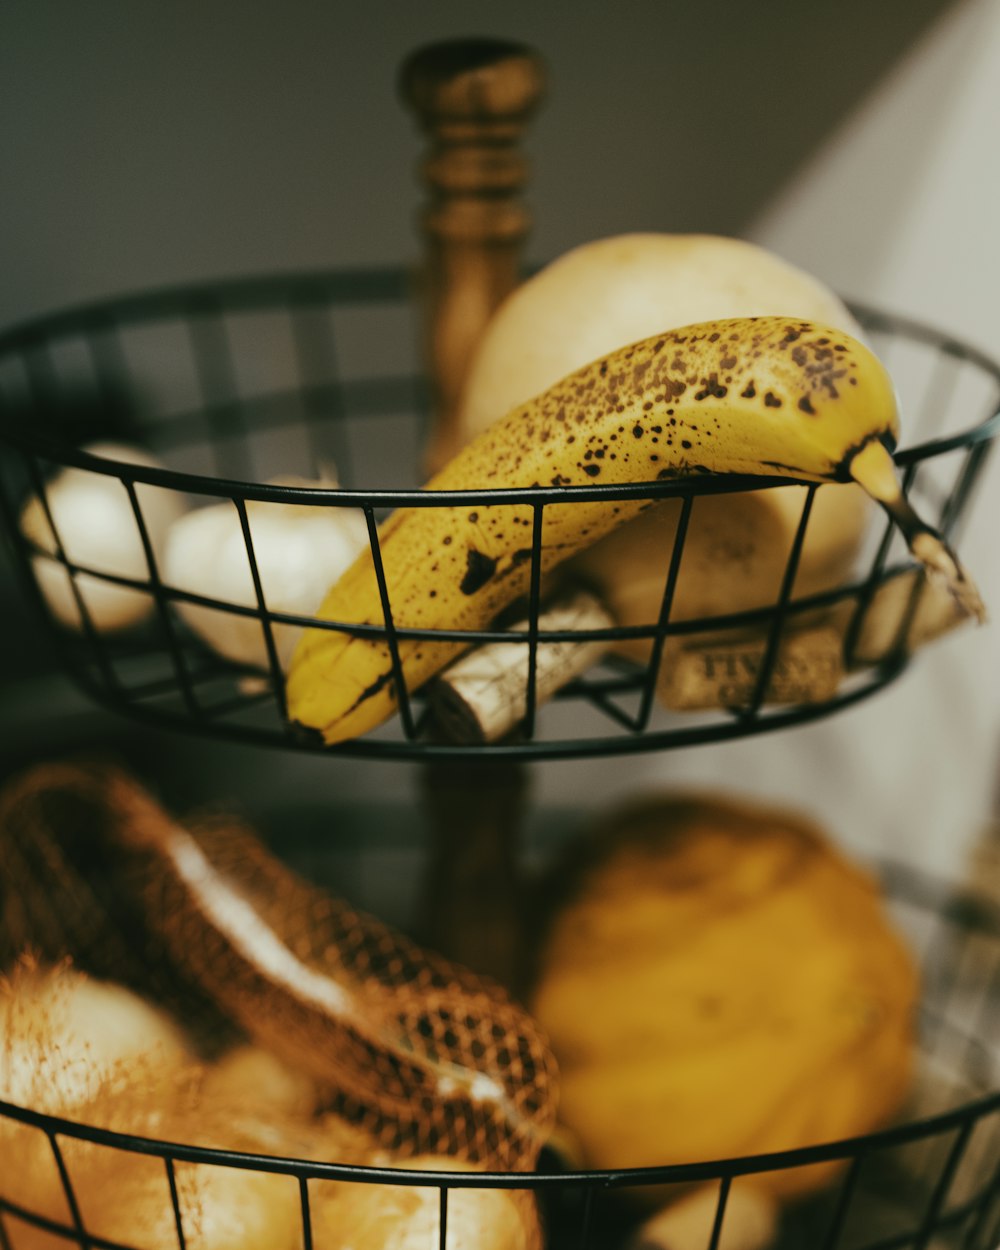 yellow banana fruit on black metal basket